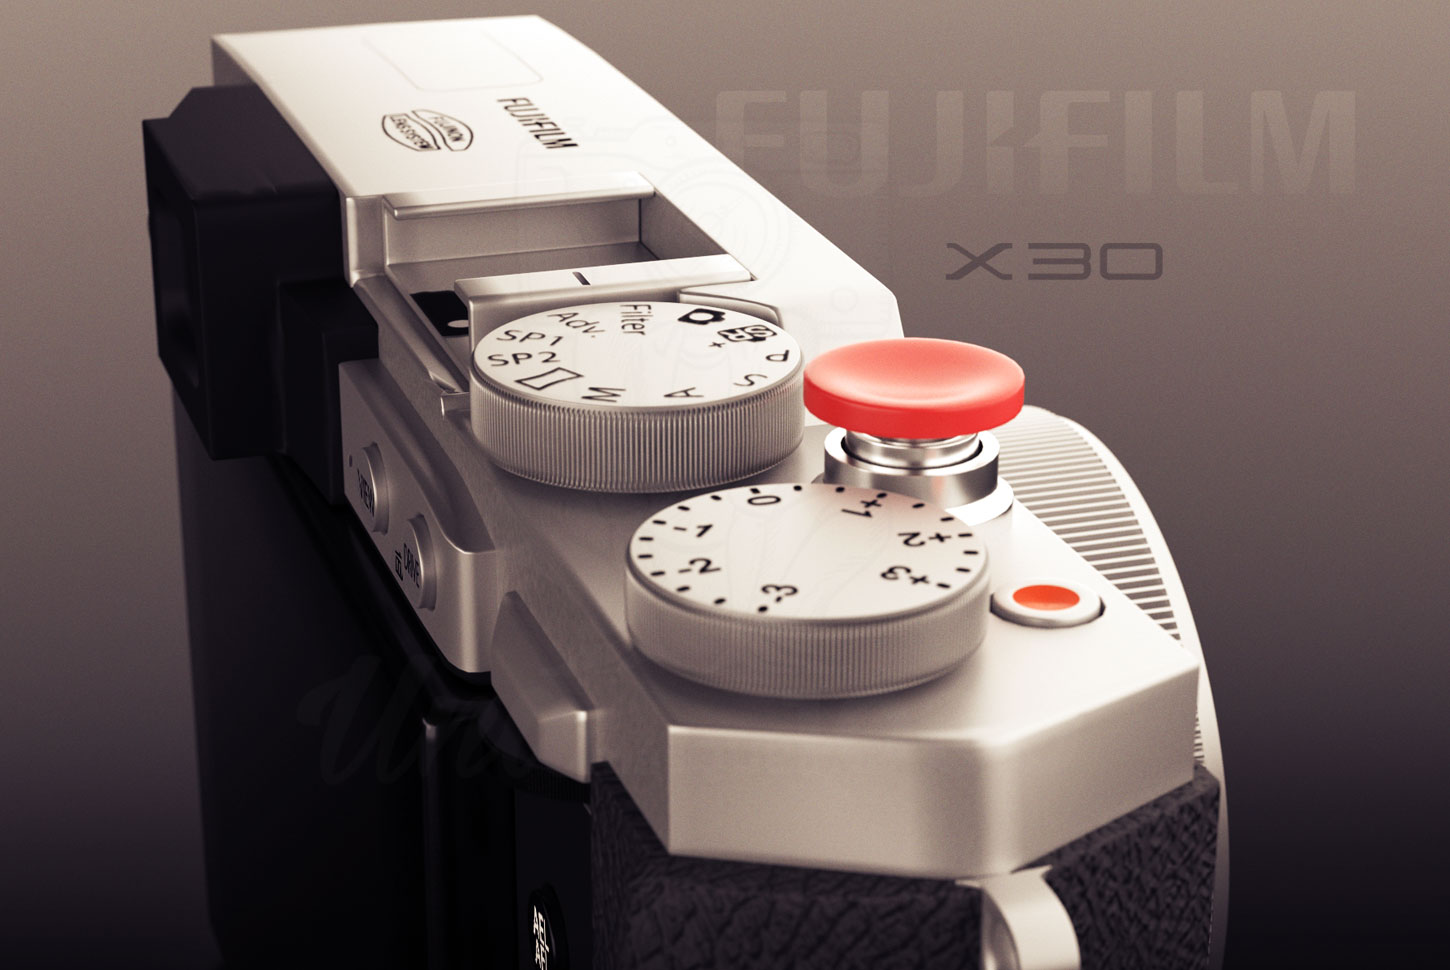 Diseño 3D cámara de fotos Fujifilm X30 - UNAmasque1000 - Fotografía de productos